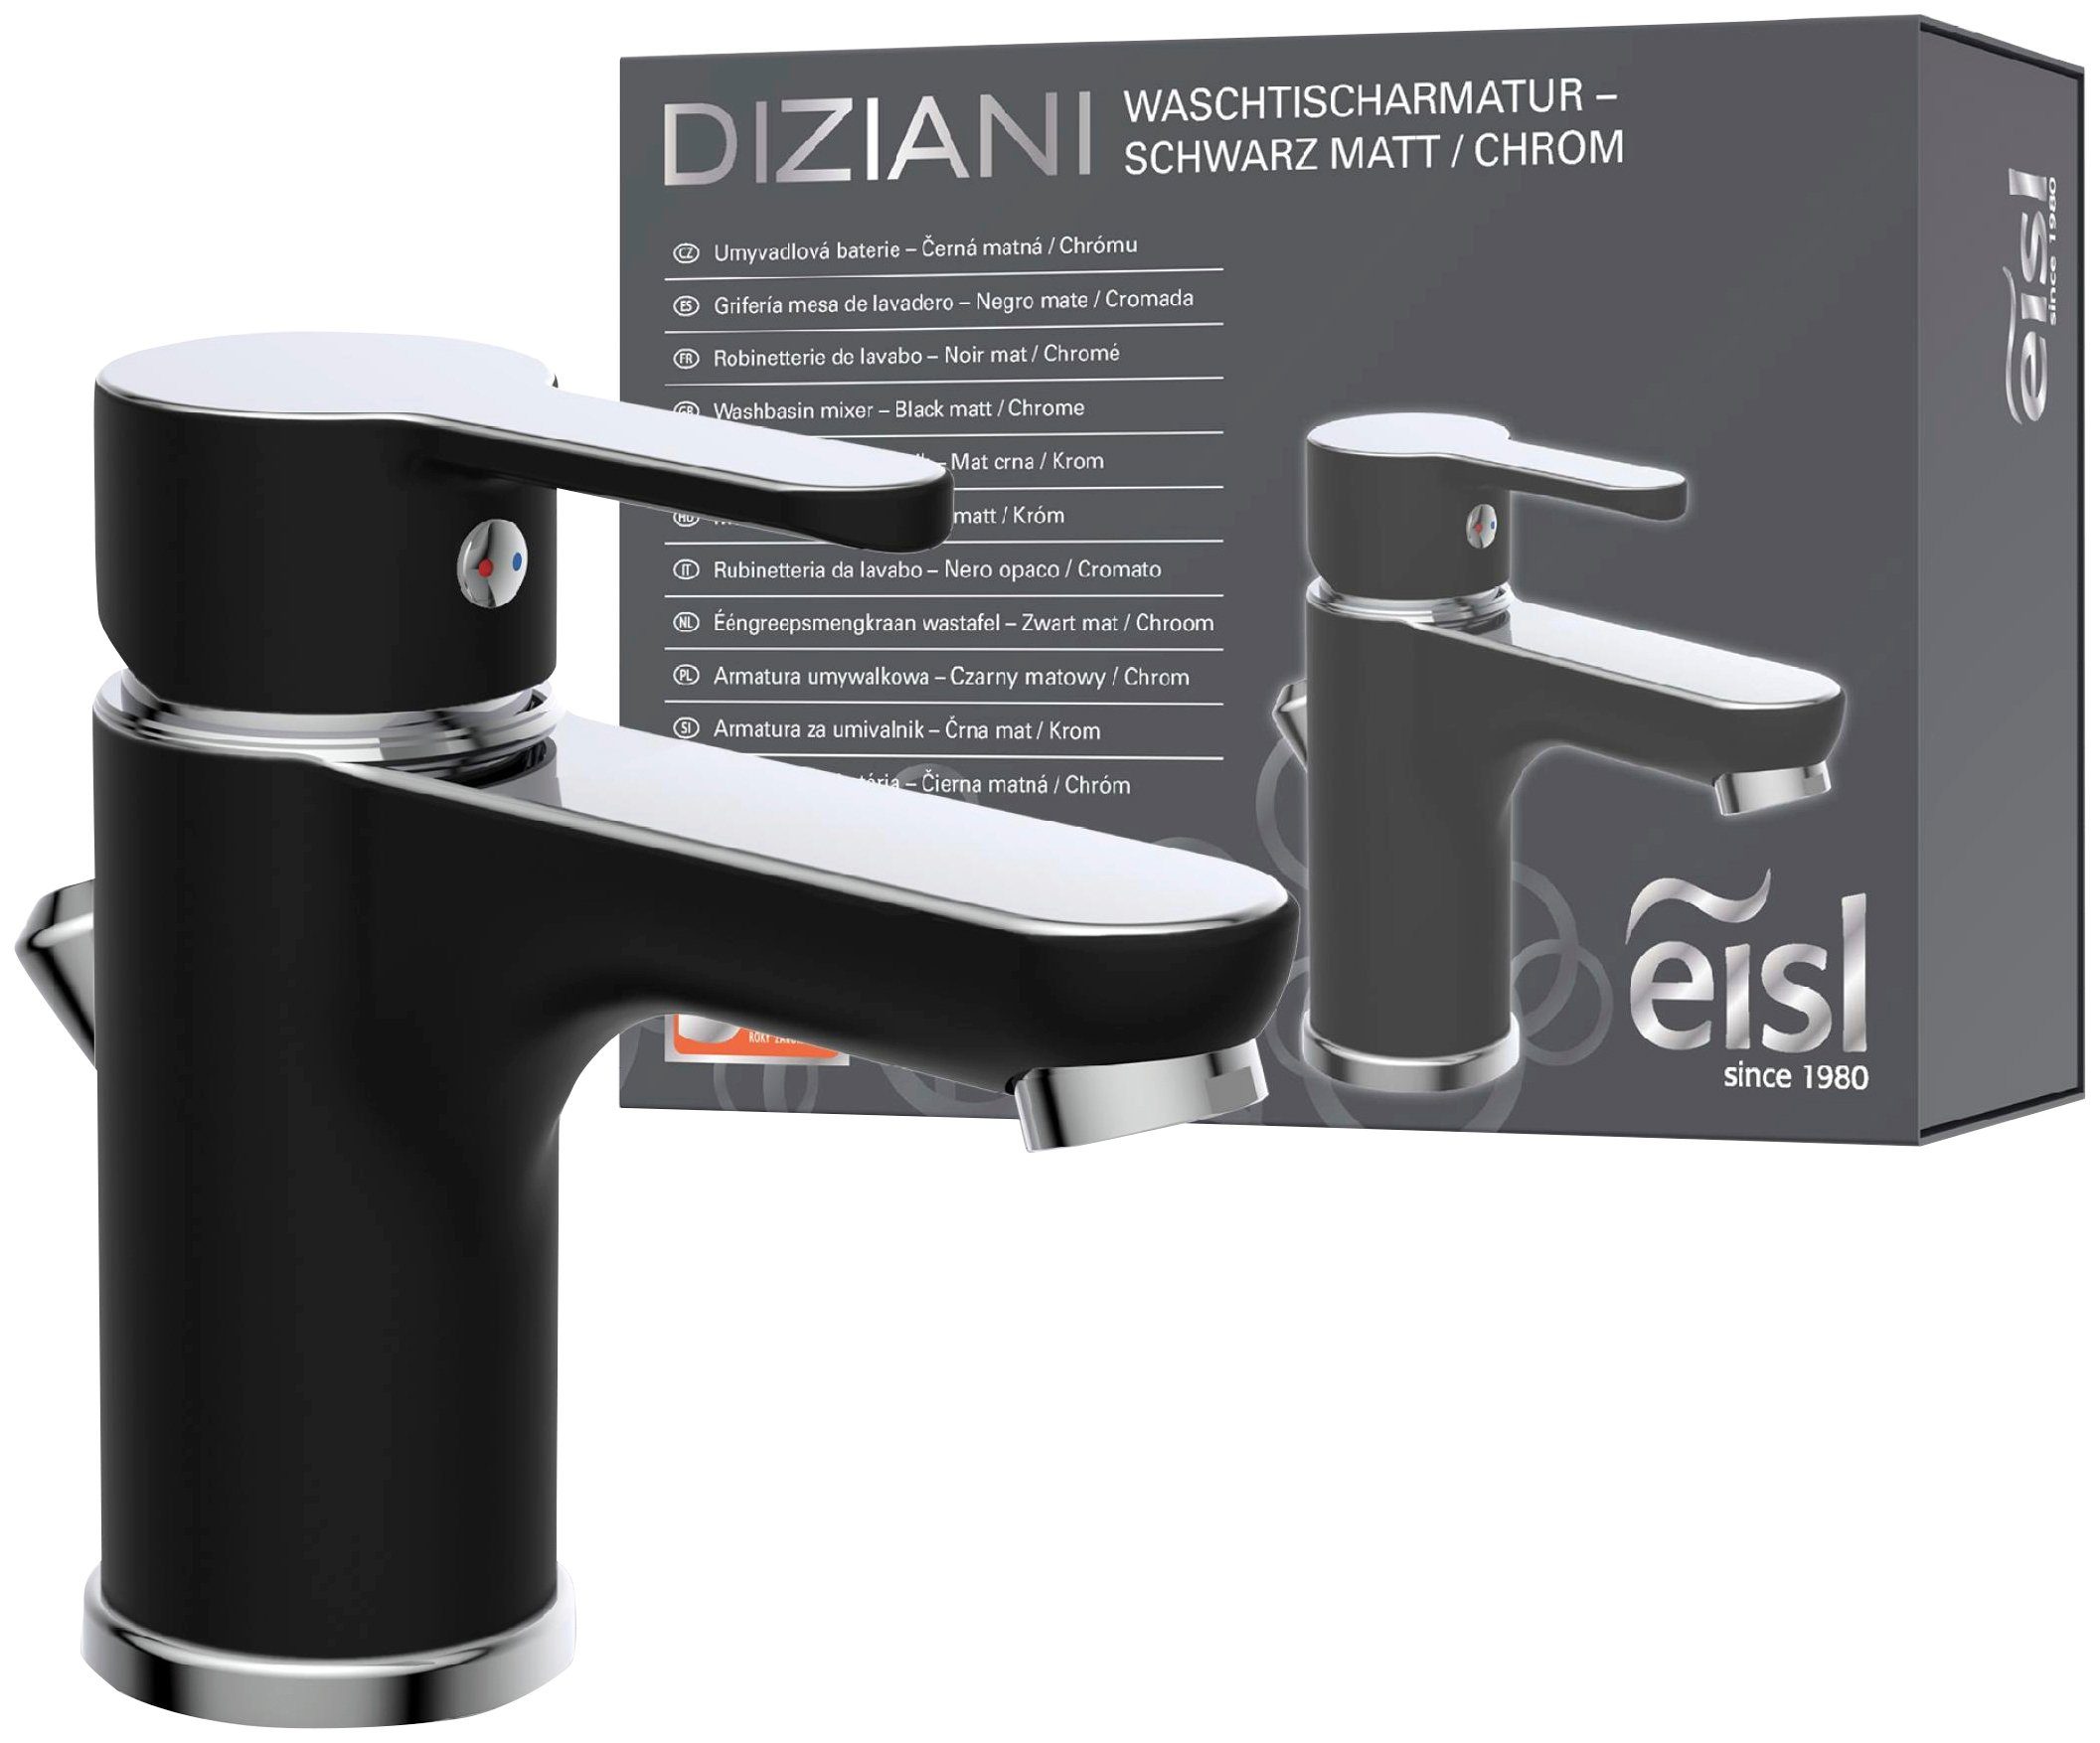 Eisl Waschtischarmatur Diziani mit Zugstange, Wasserhahn mit Ablaufgarnitur, Mischbatterie schwarz, silberfarben